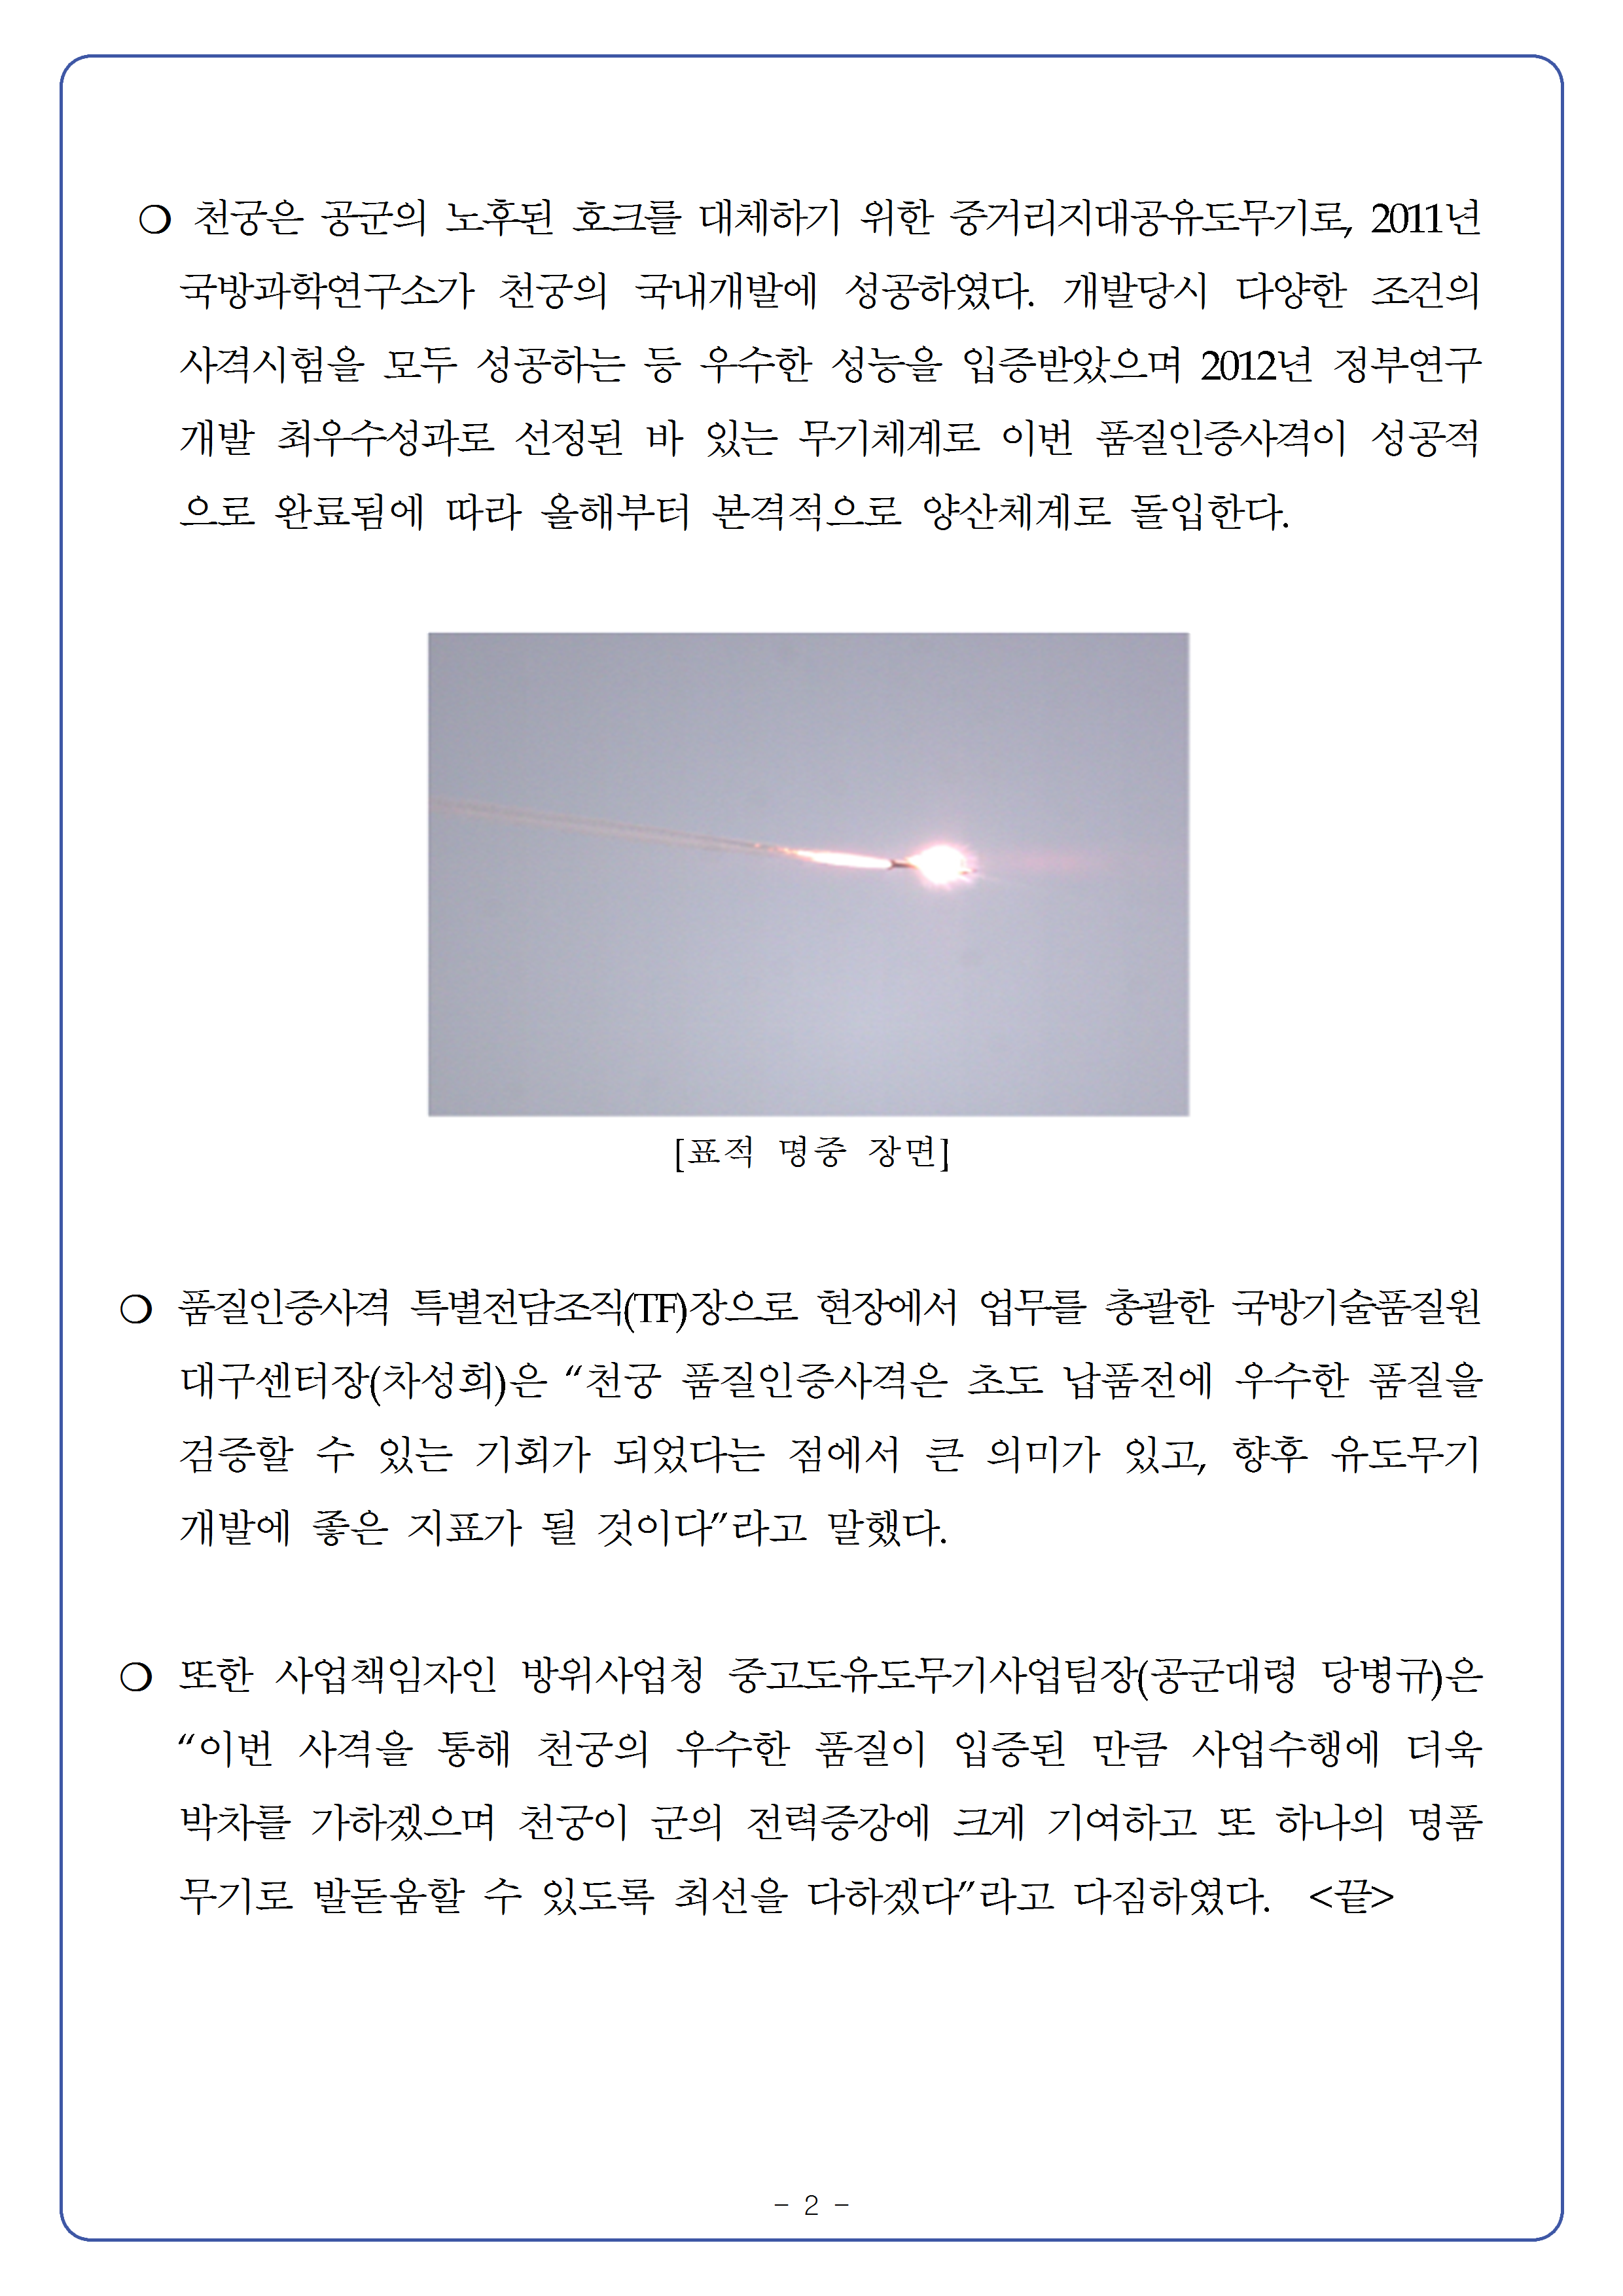 20150730-중거리지대공유도무기 천궁 품질인증사격 성공002.png